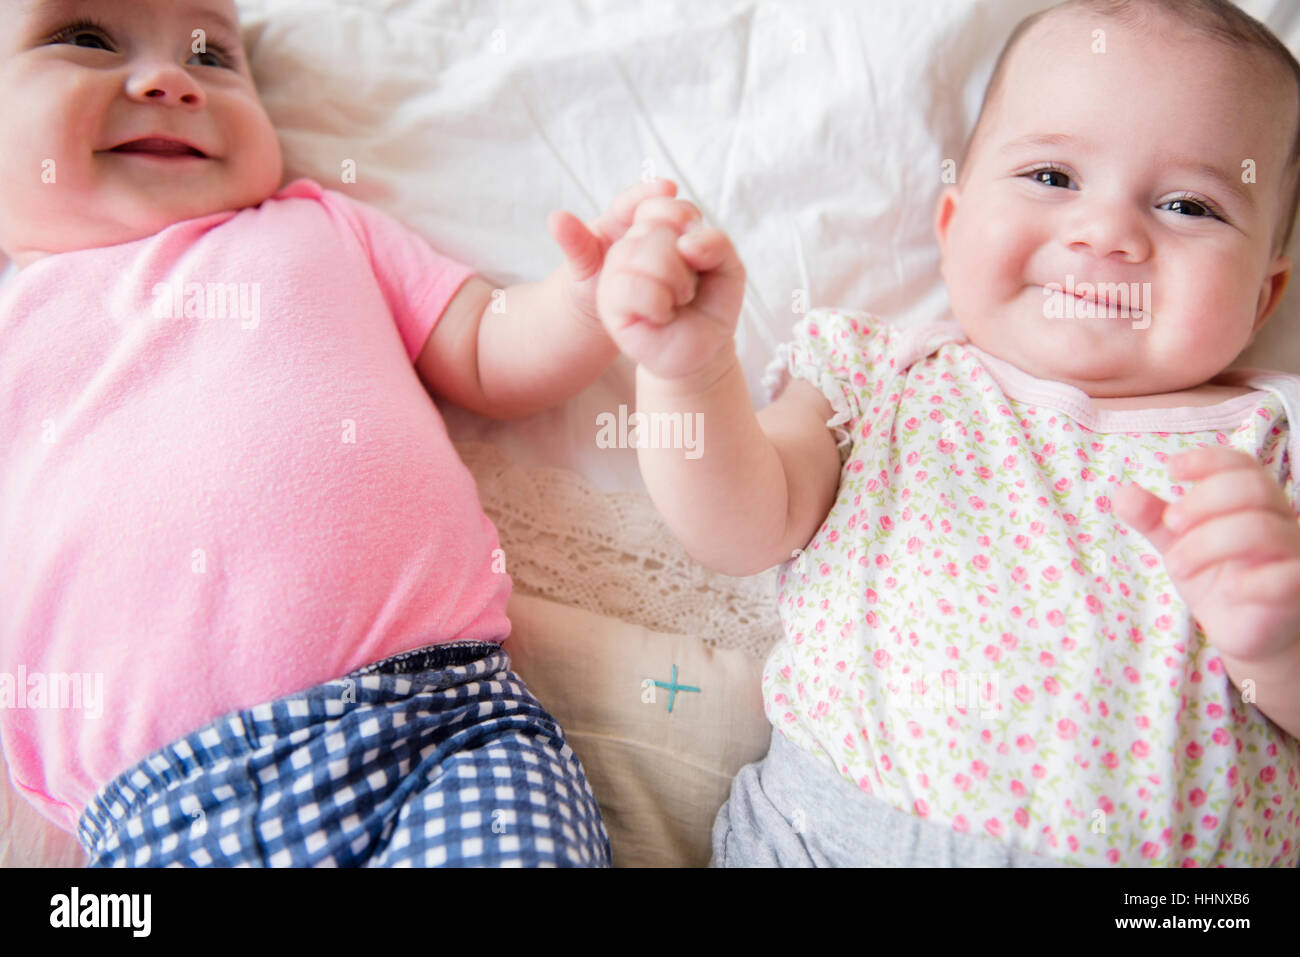 Lits bébé filles caucasiennes smiling on bed Banque D'Images